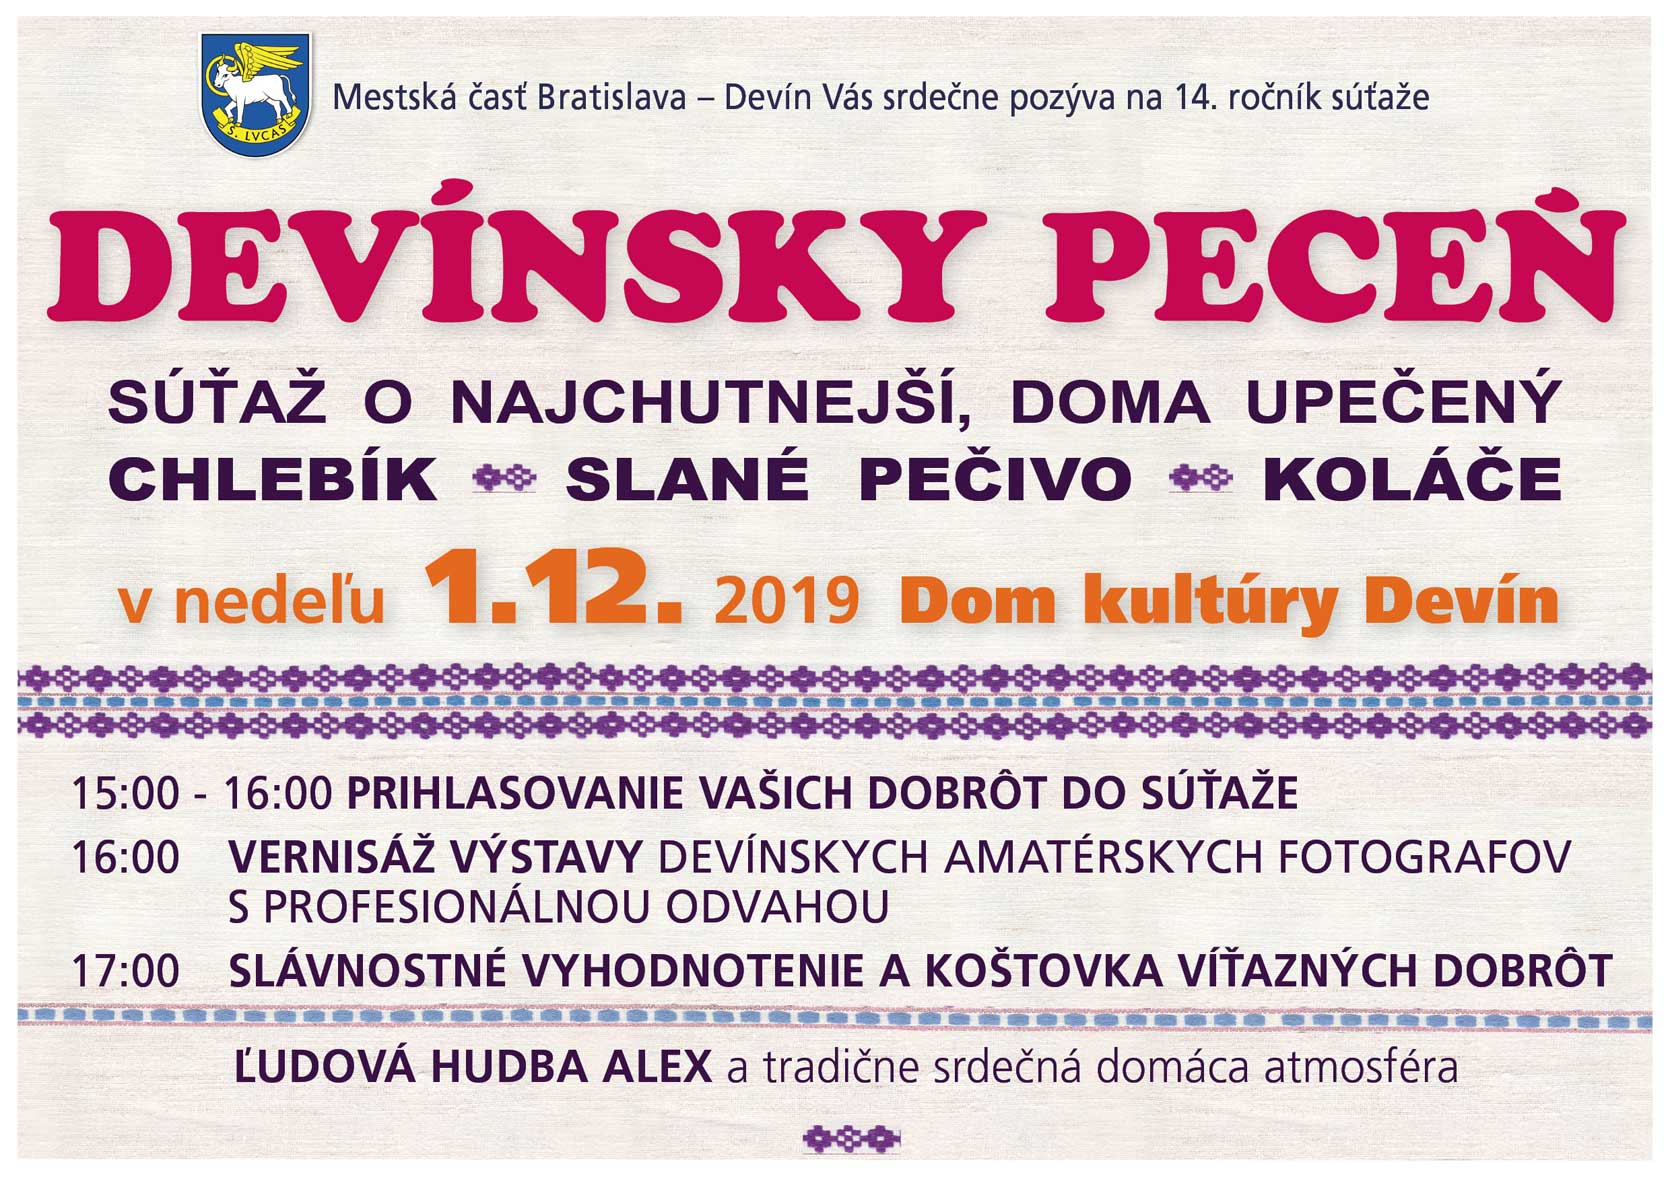 Devnsky pece a foto-vernis 2019 - 14. ronk